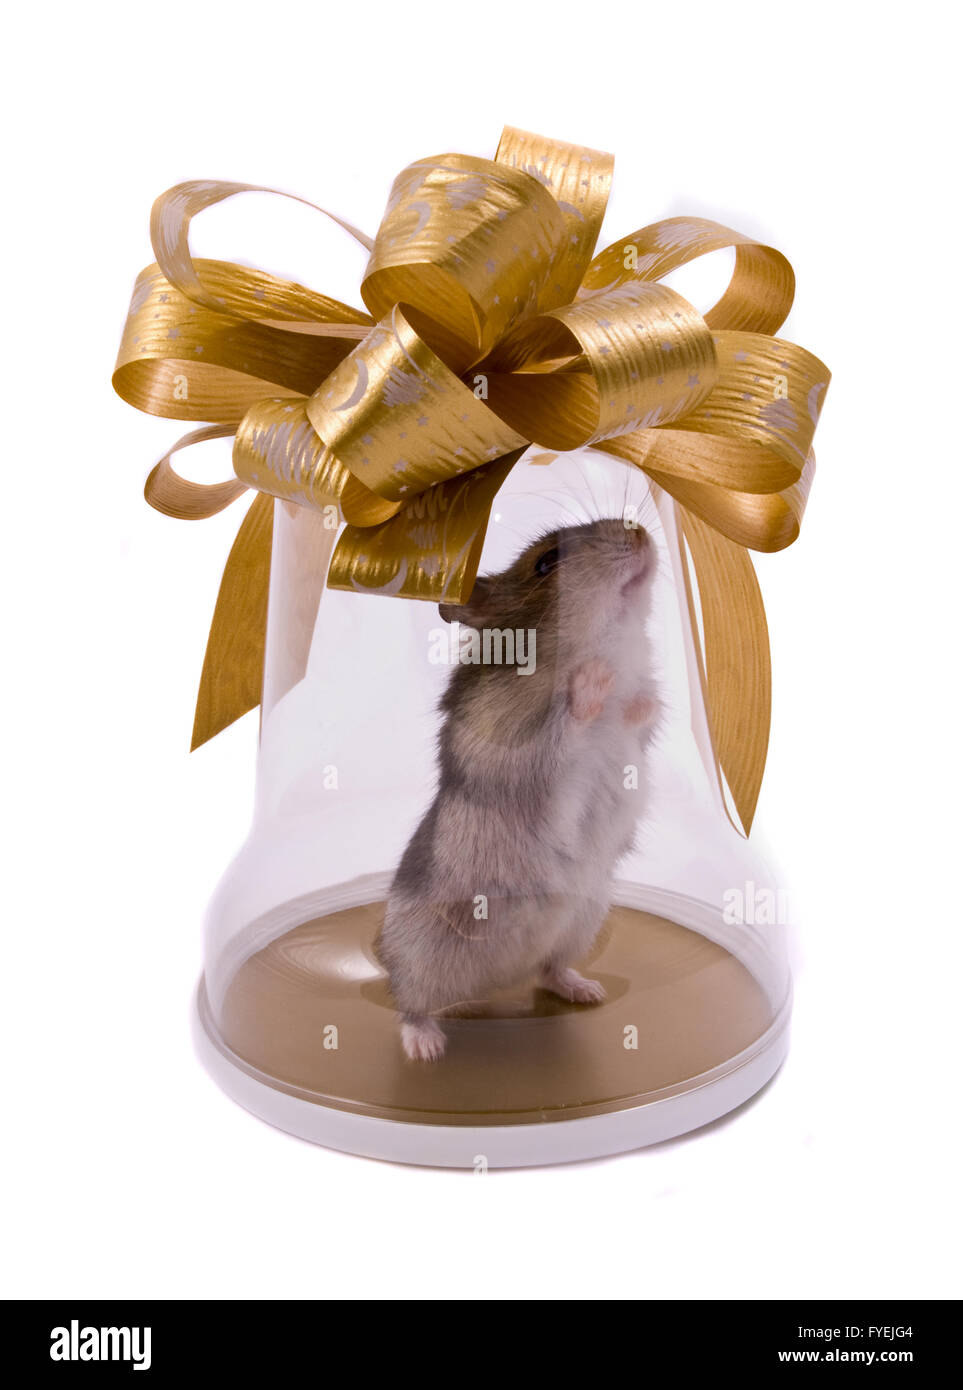 little hamster present Stock Photo